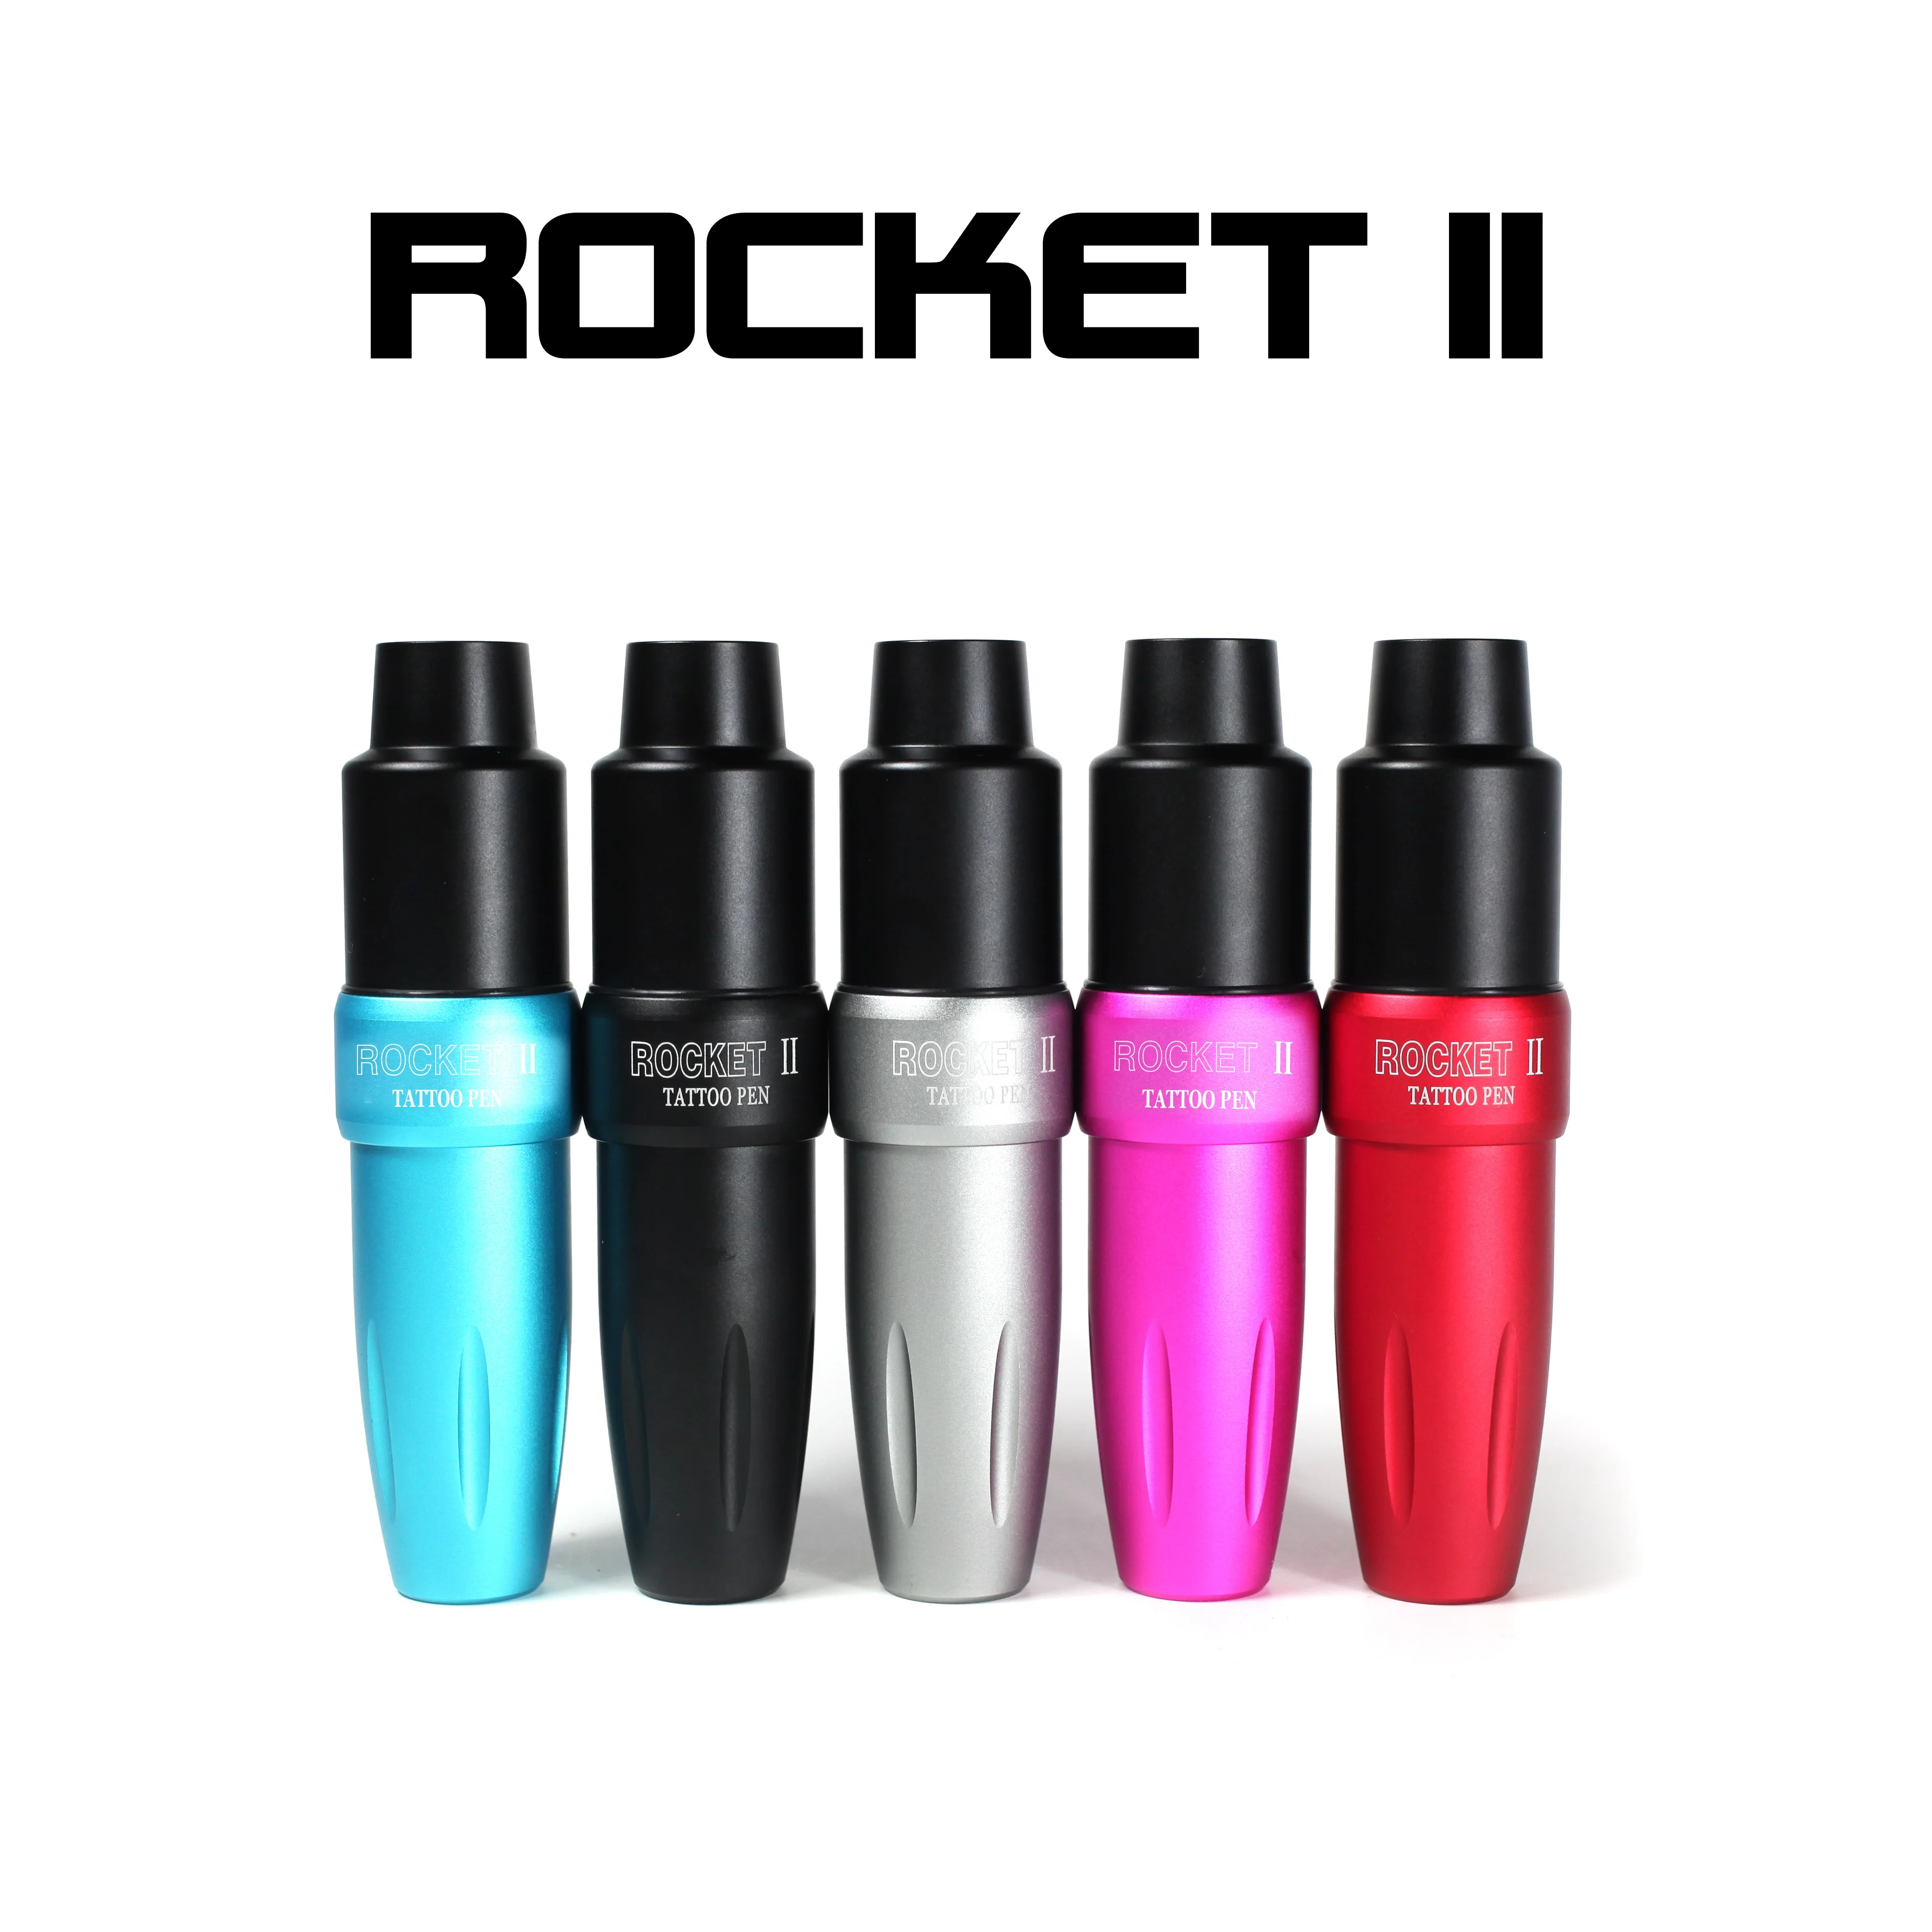  - Rocket  II,        , -, -,   